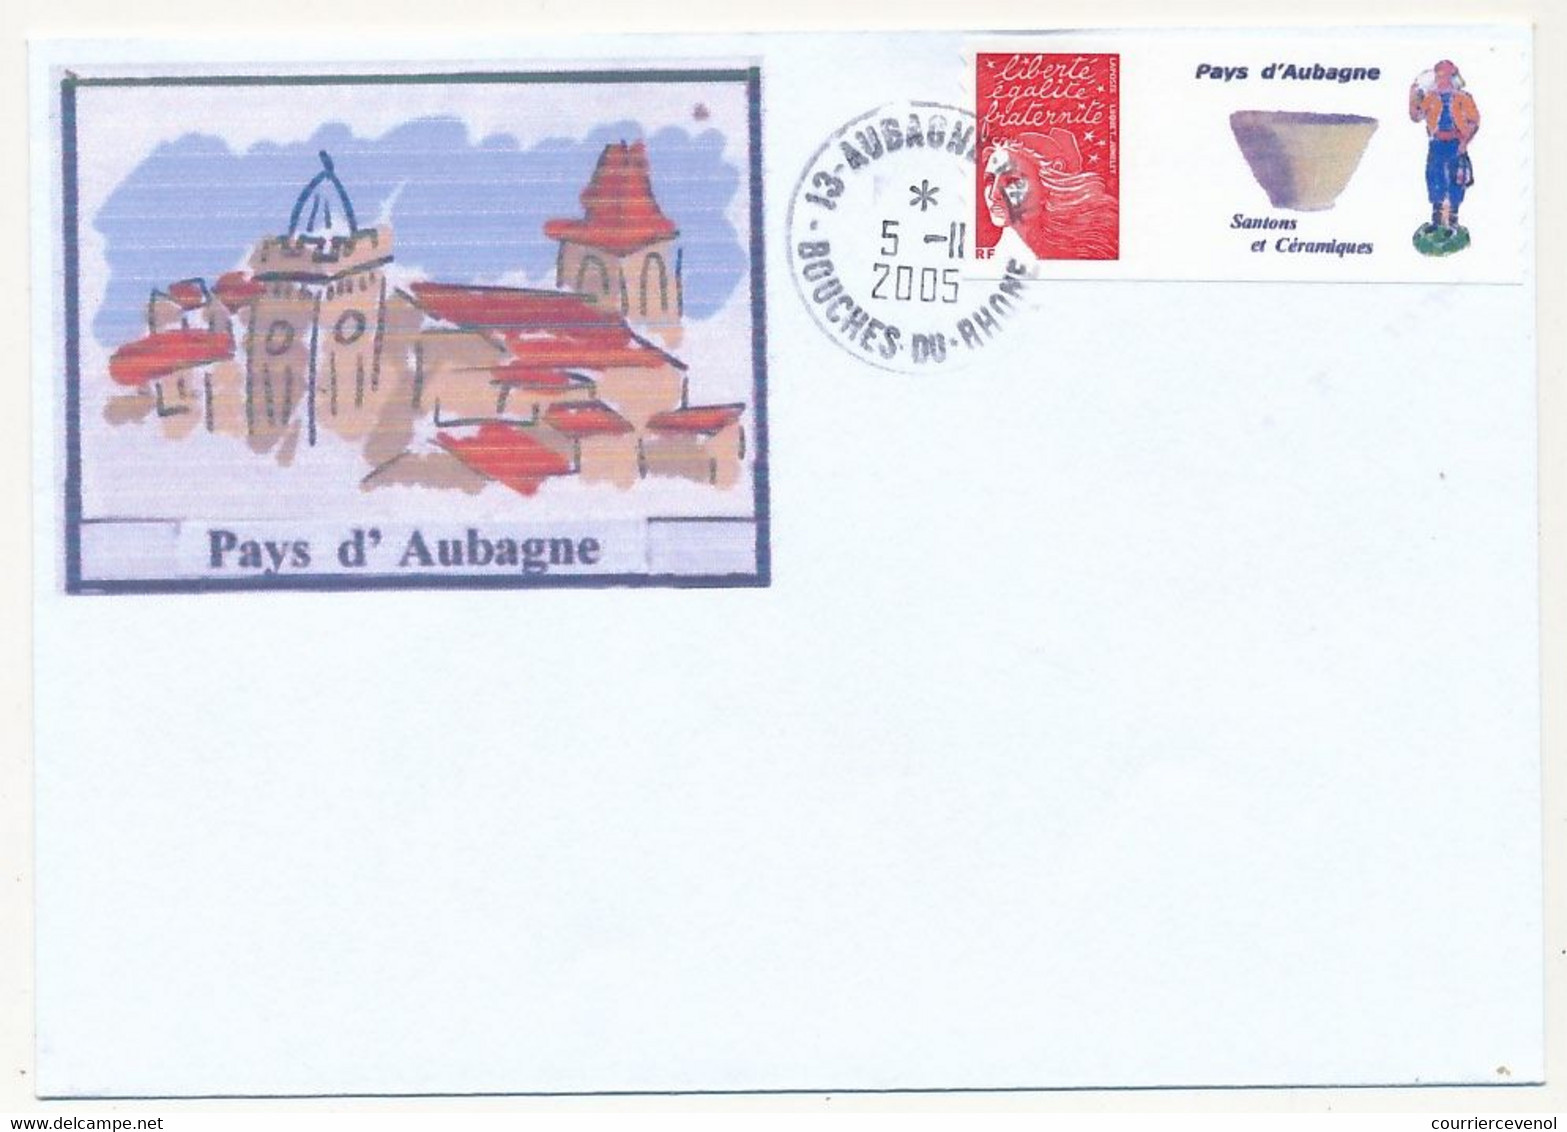 FRANCE - Enveloppe Affr. Luquet Rouge Personnalisé "Pays D'Aubagne" 5/11/2005 AUBAGNE - Non Adressée - Lettres & Documents